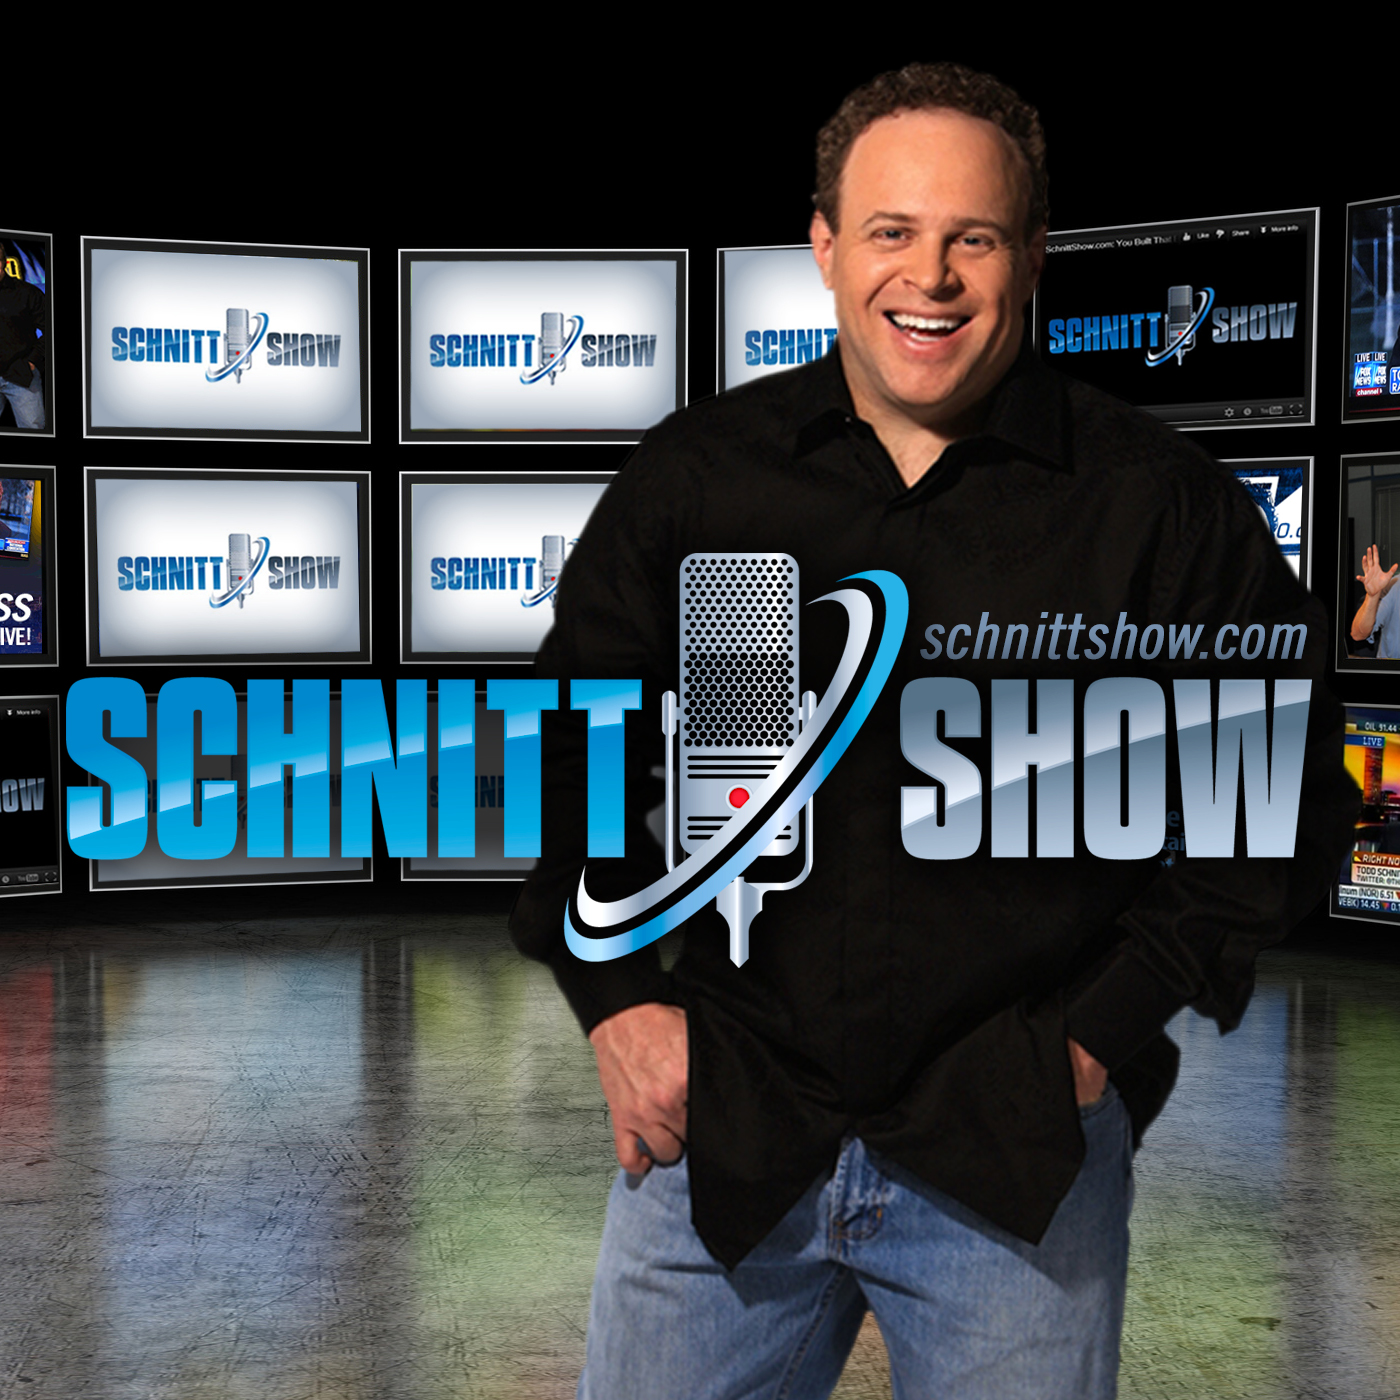 The Schnitt Show